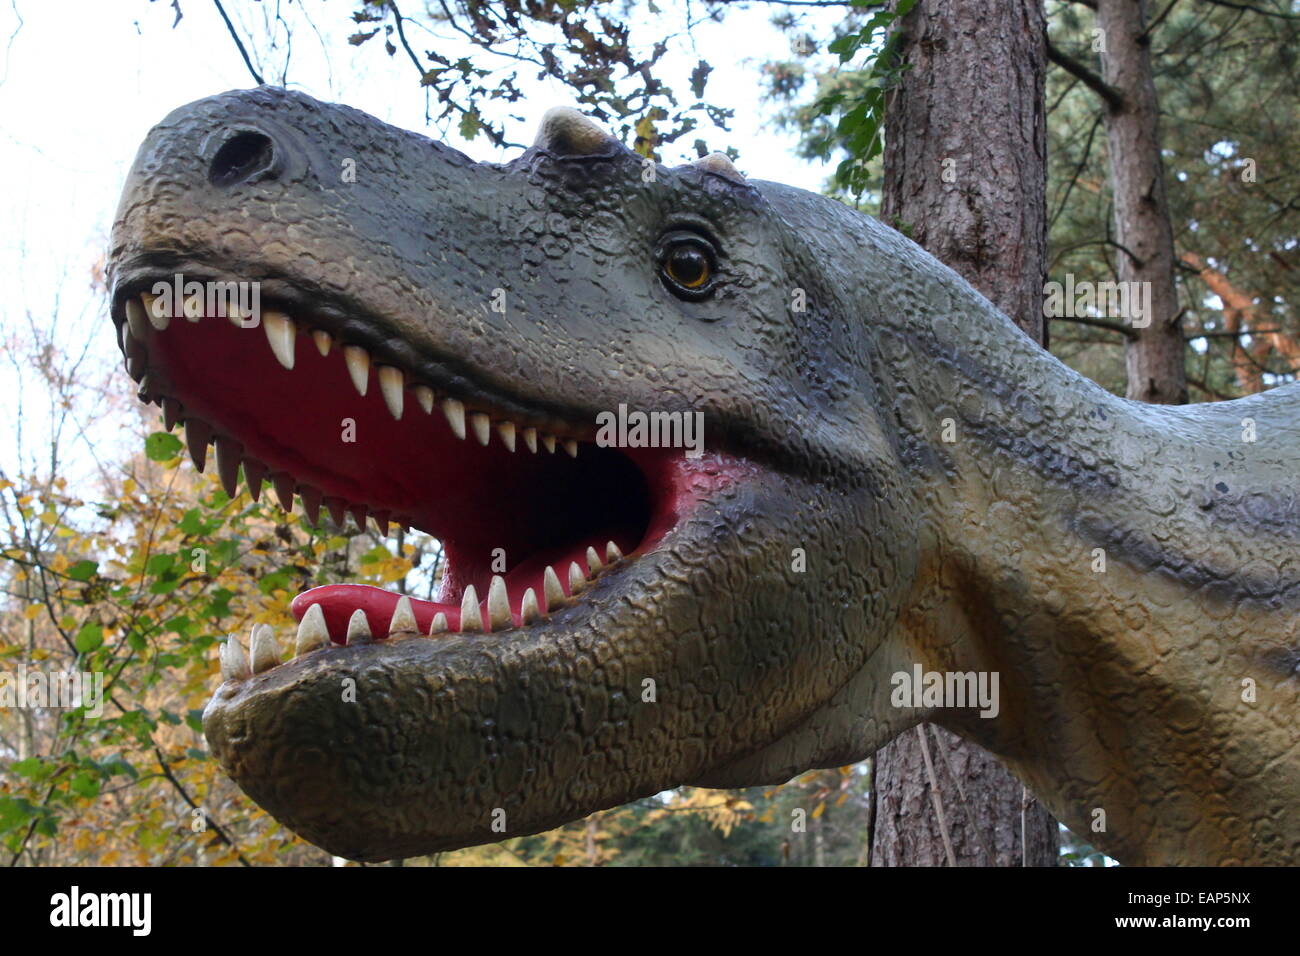 L'Albertosaurus nord-américain, un grand dinosaure carnivore de l'ère du Crétacé, à Amersfoort, Pays-Bas Dinopark Zoo Banque D'Images